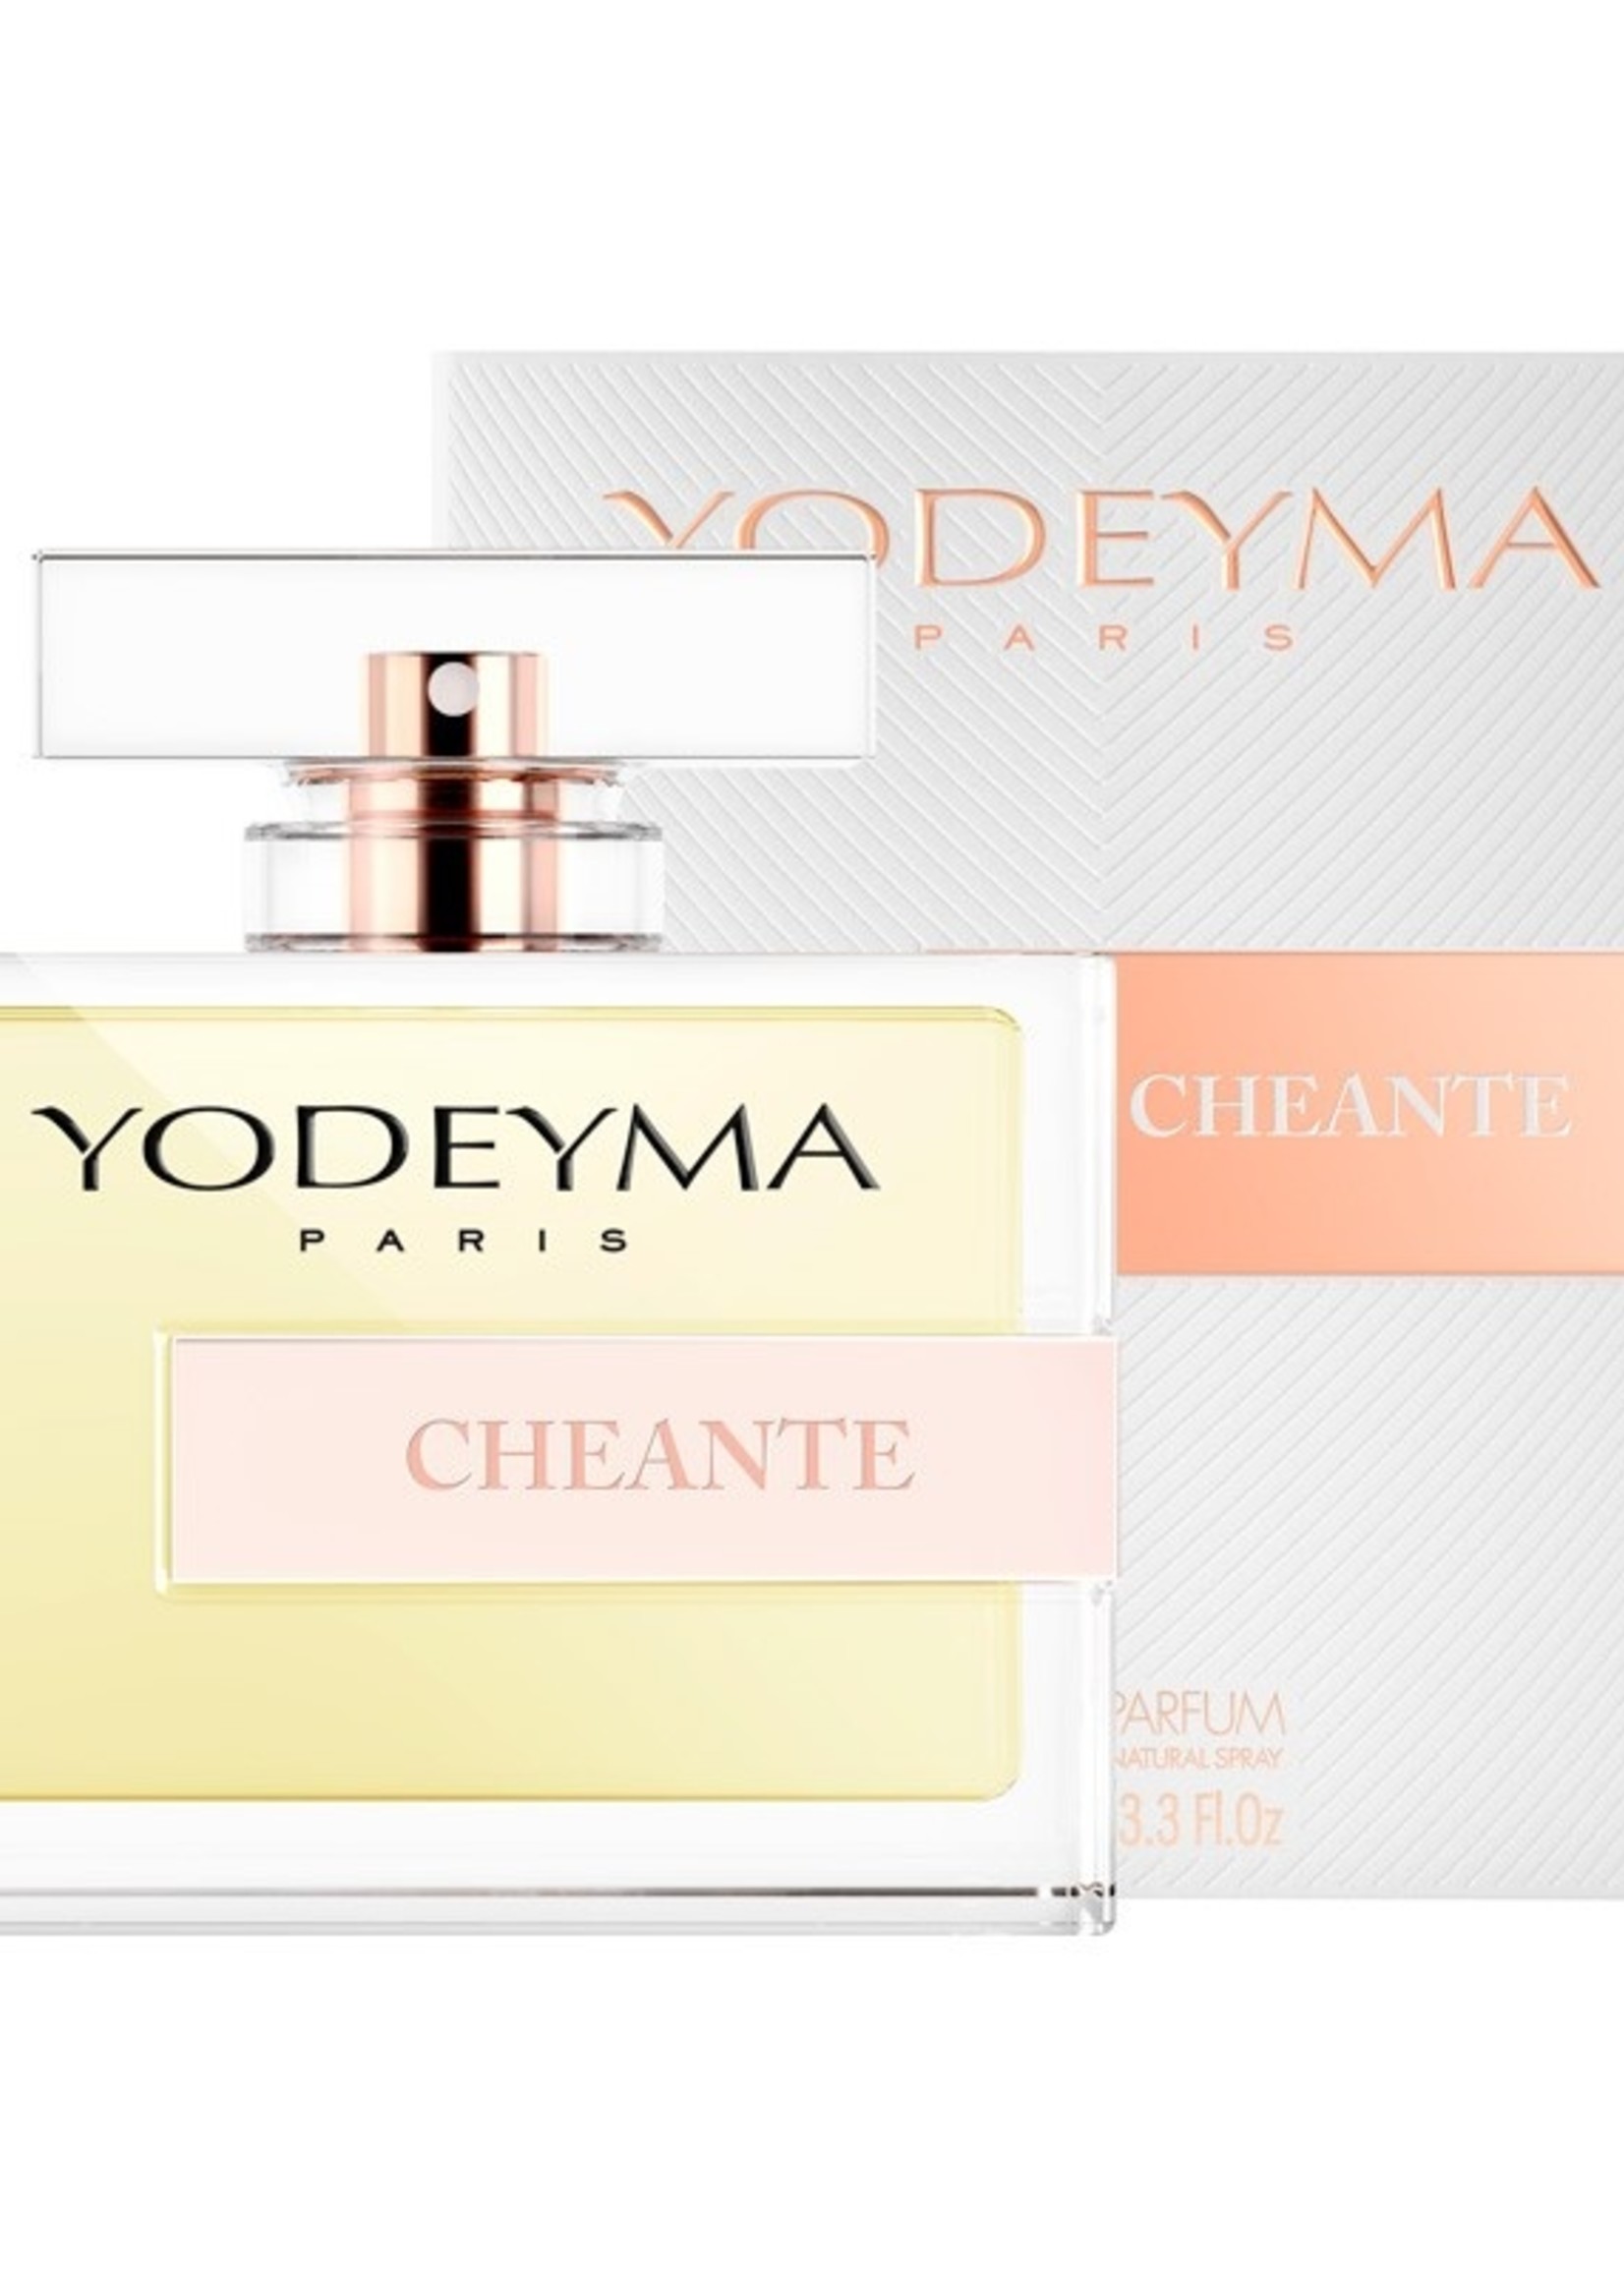 Yodeyma Parfums CHEANTE Eau de Parfum 100 ml.